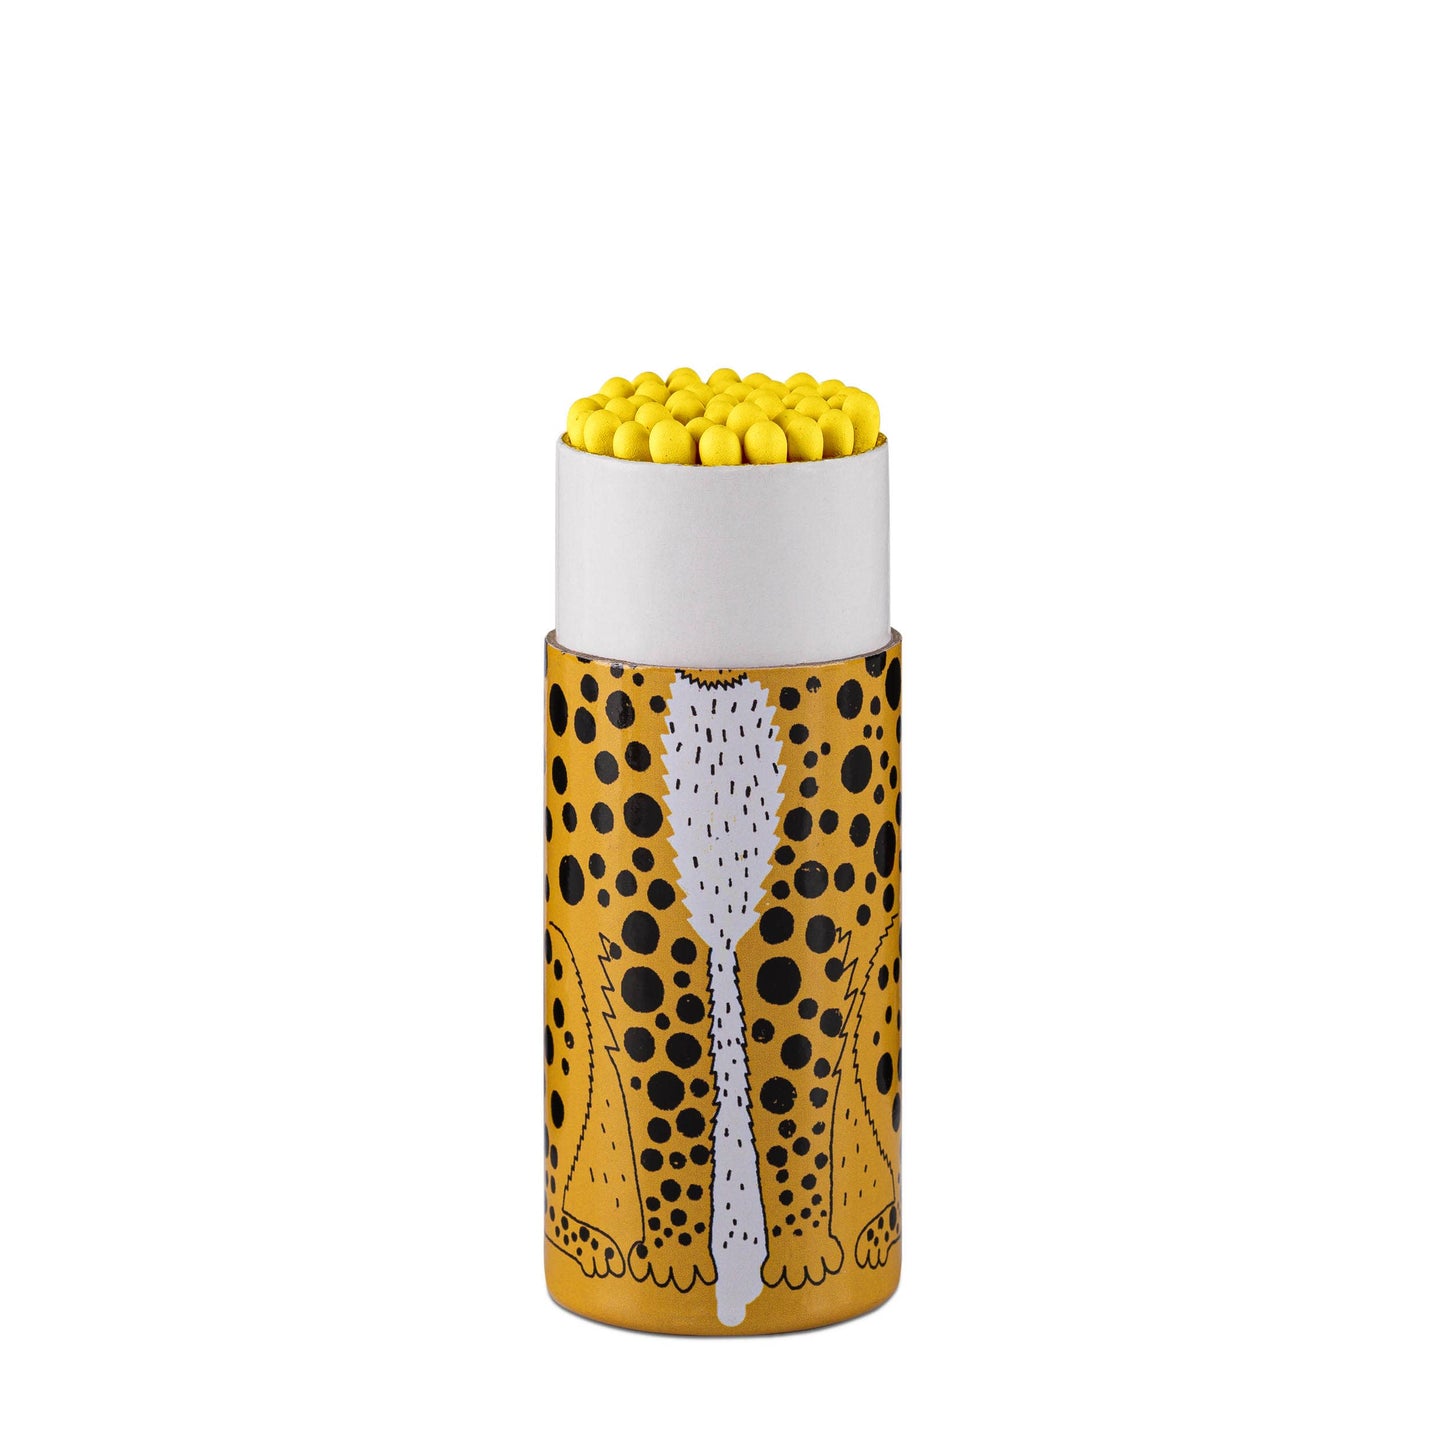 Leopard Match Cylinder Matches